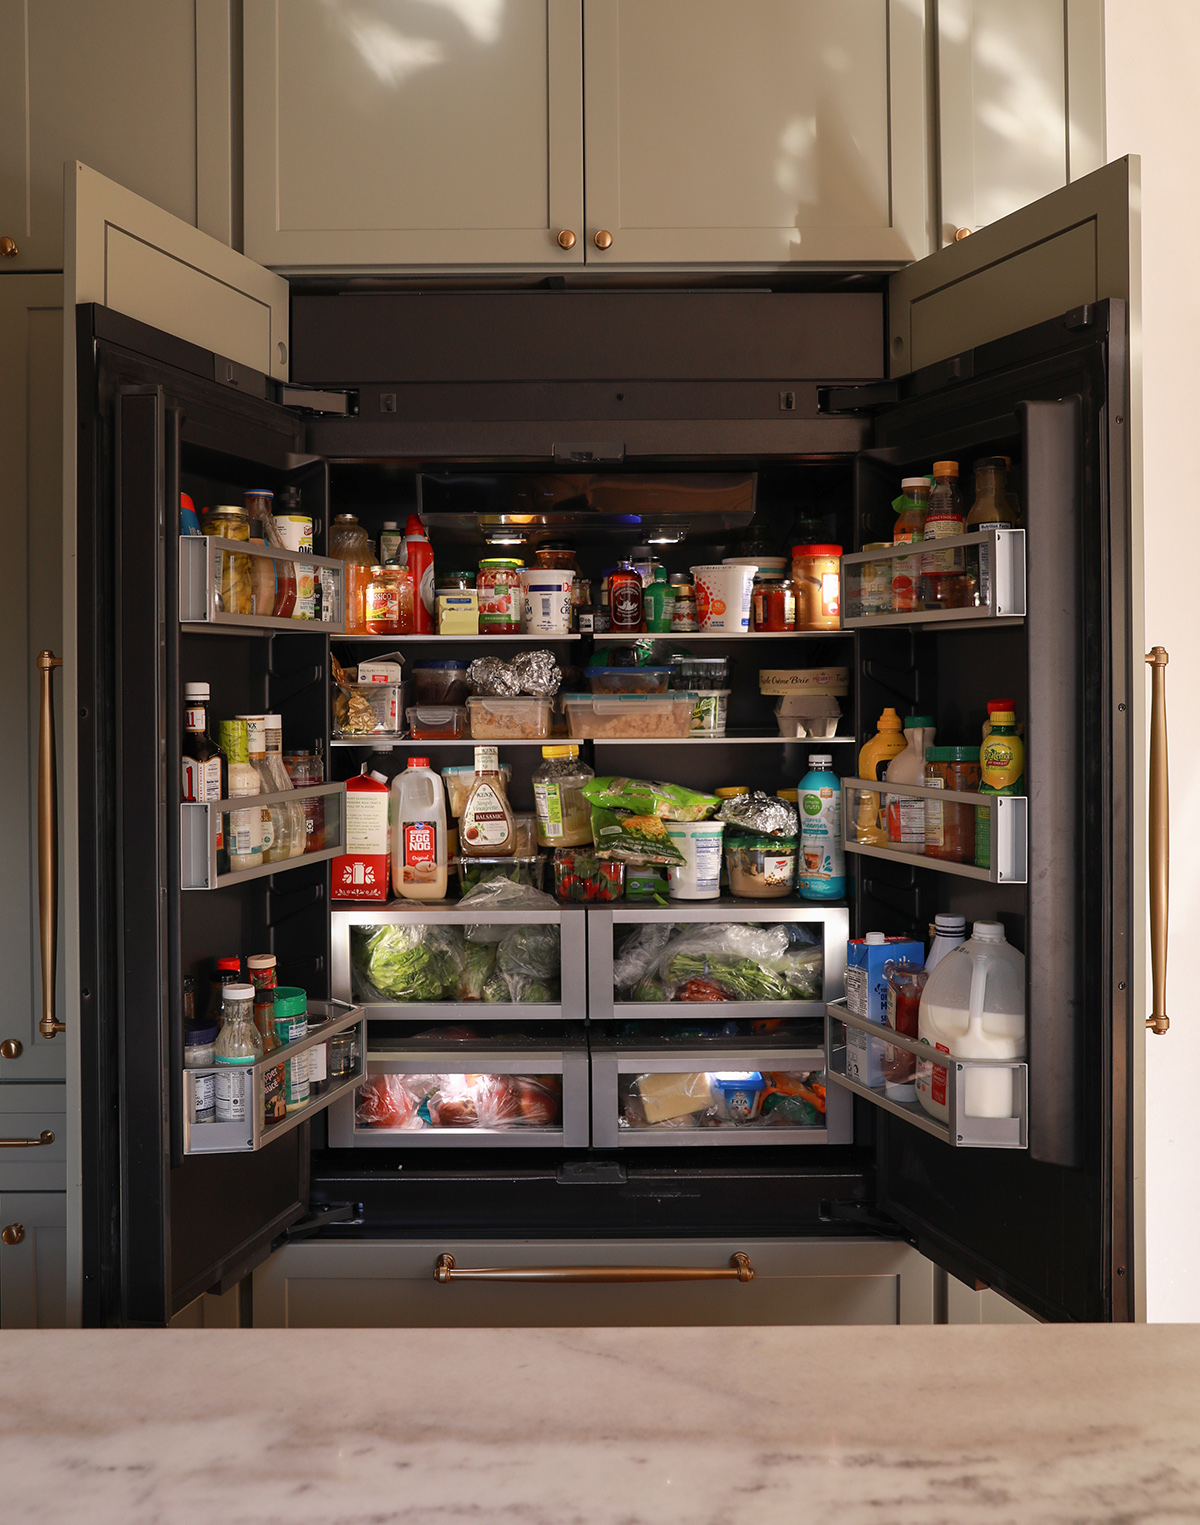 counter depth fridge - integrated fridge - Jenn Air